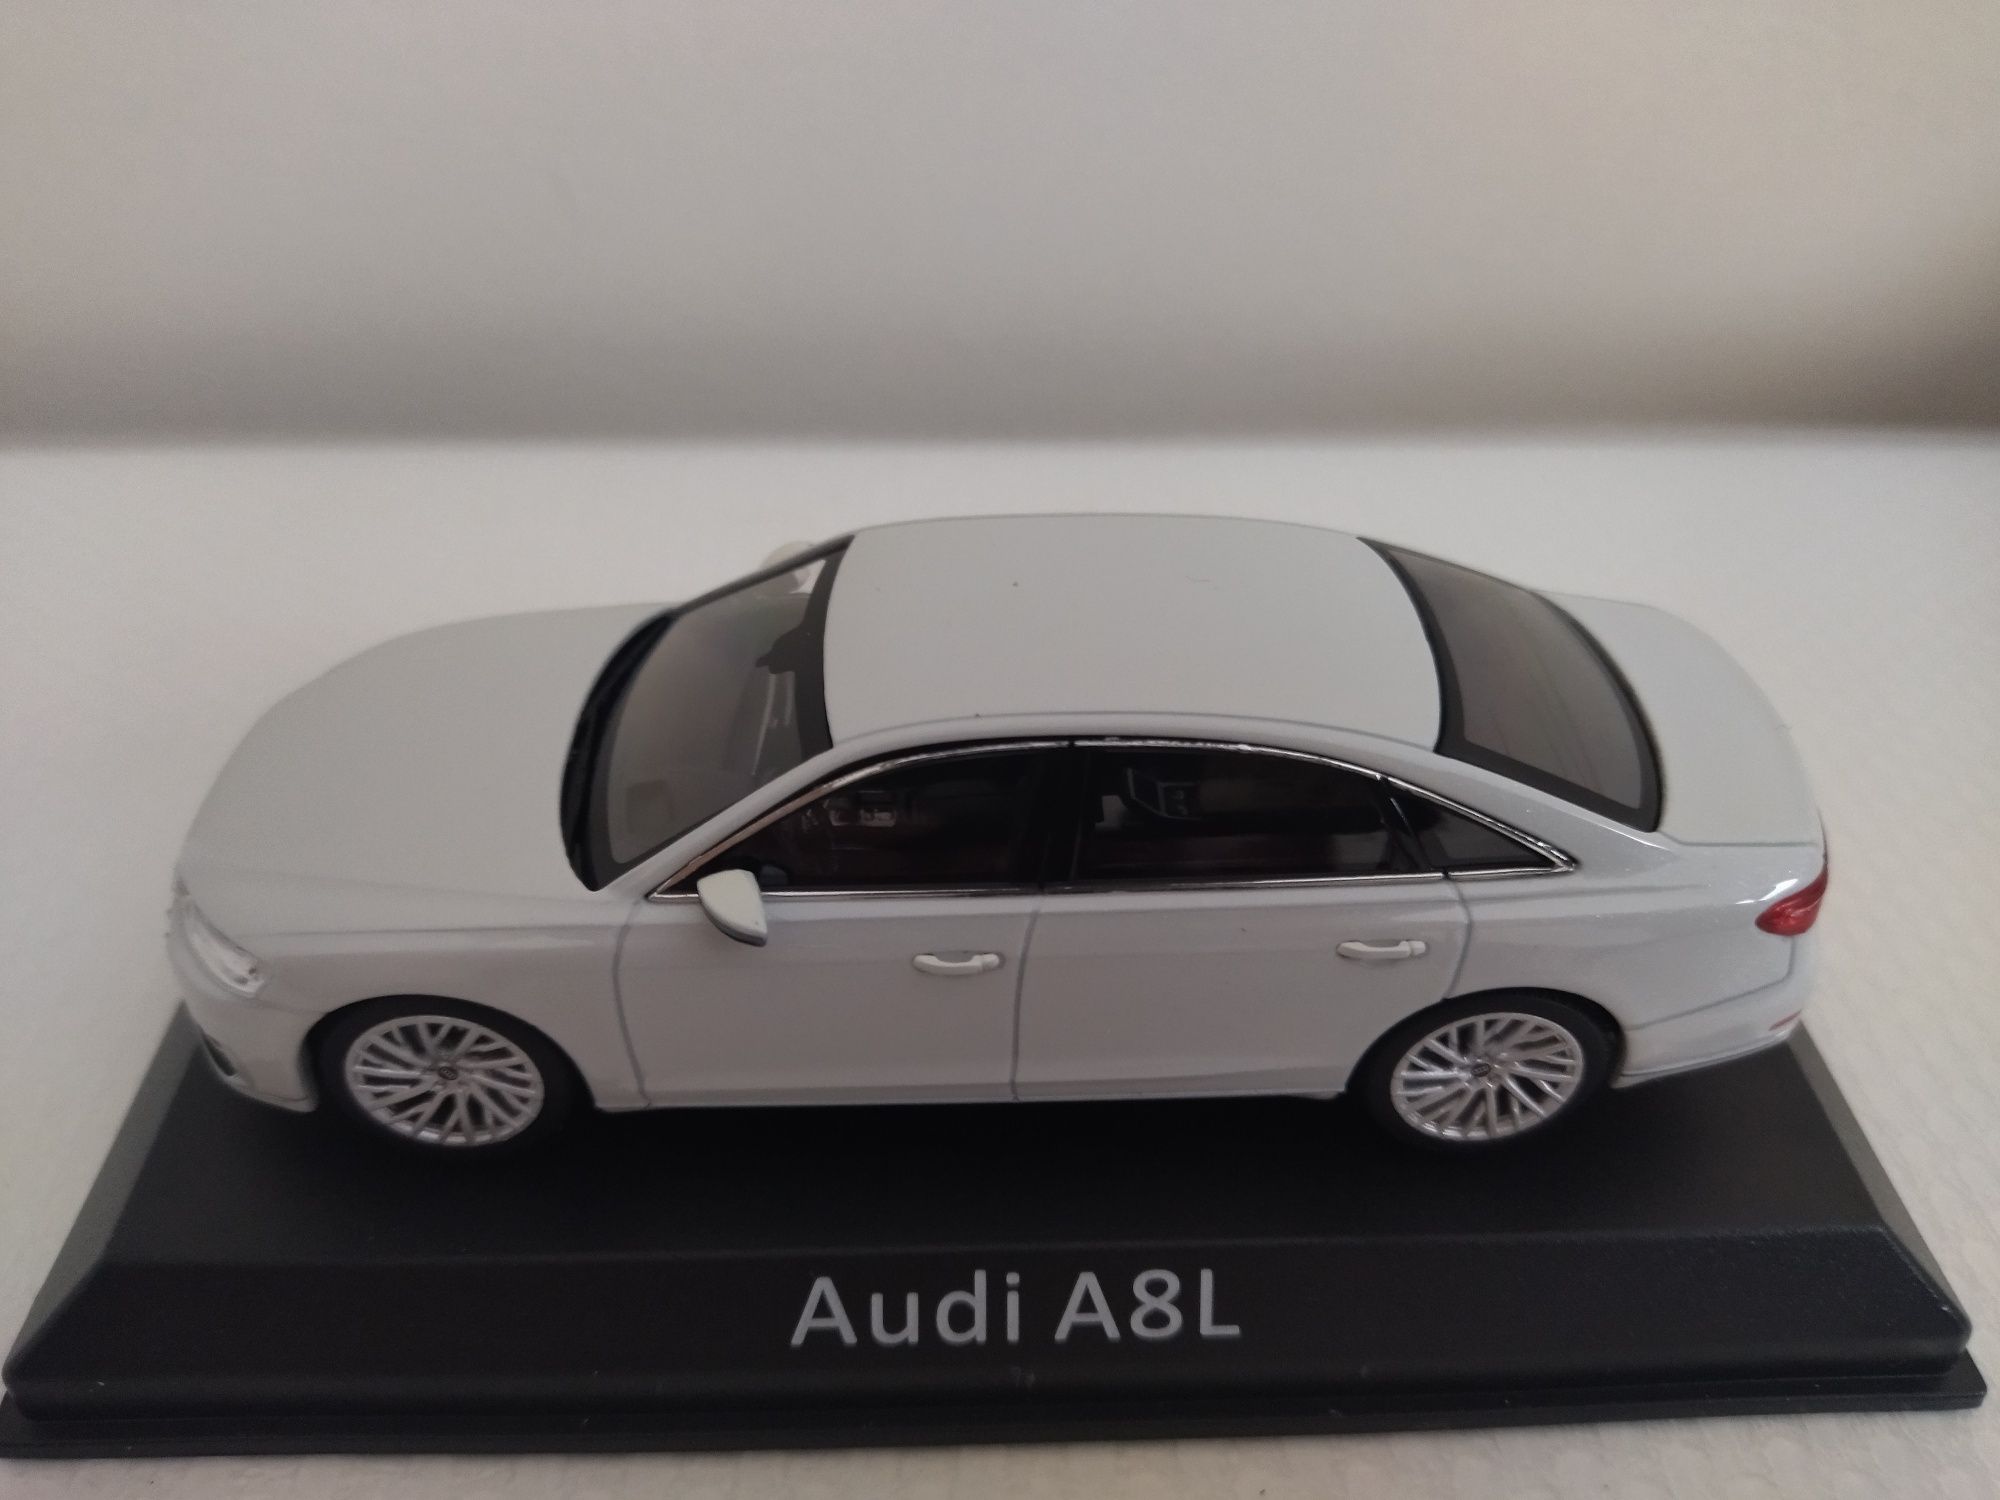 Miniatura Audi A8 Nova 1/43